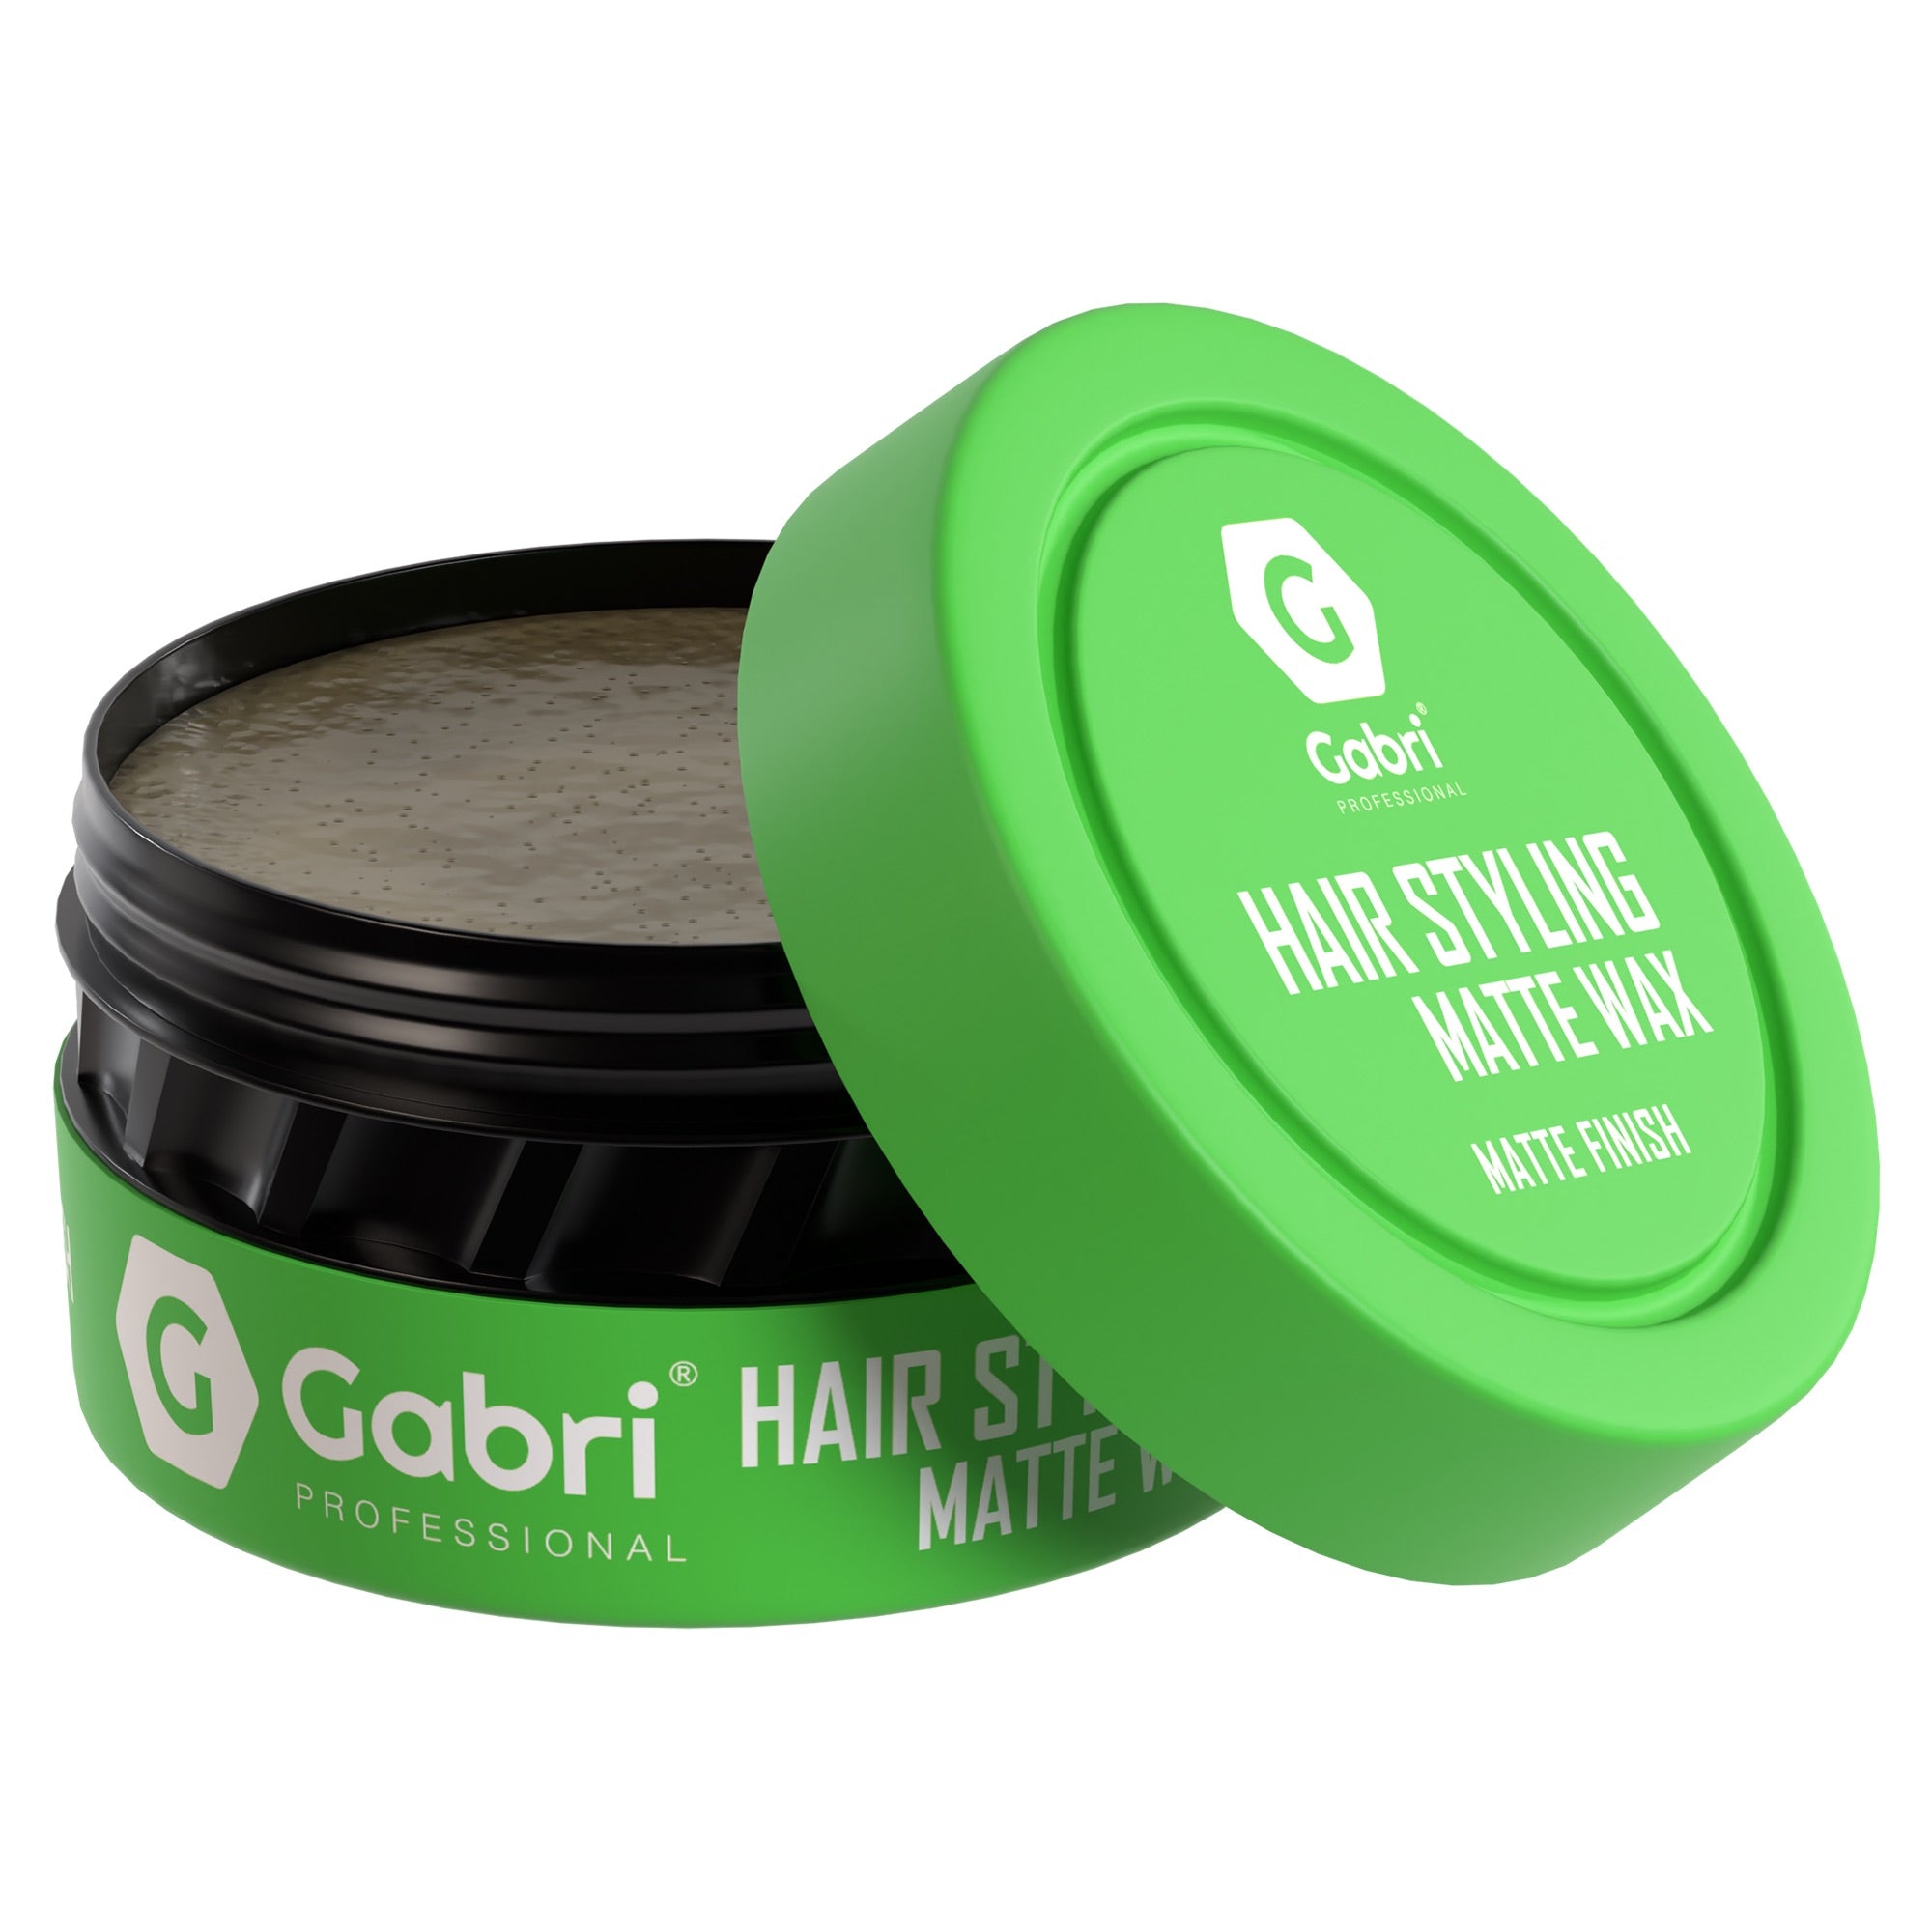 Gabri Professional - Hair Styling Wax Matte Finish 150ml